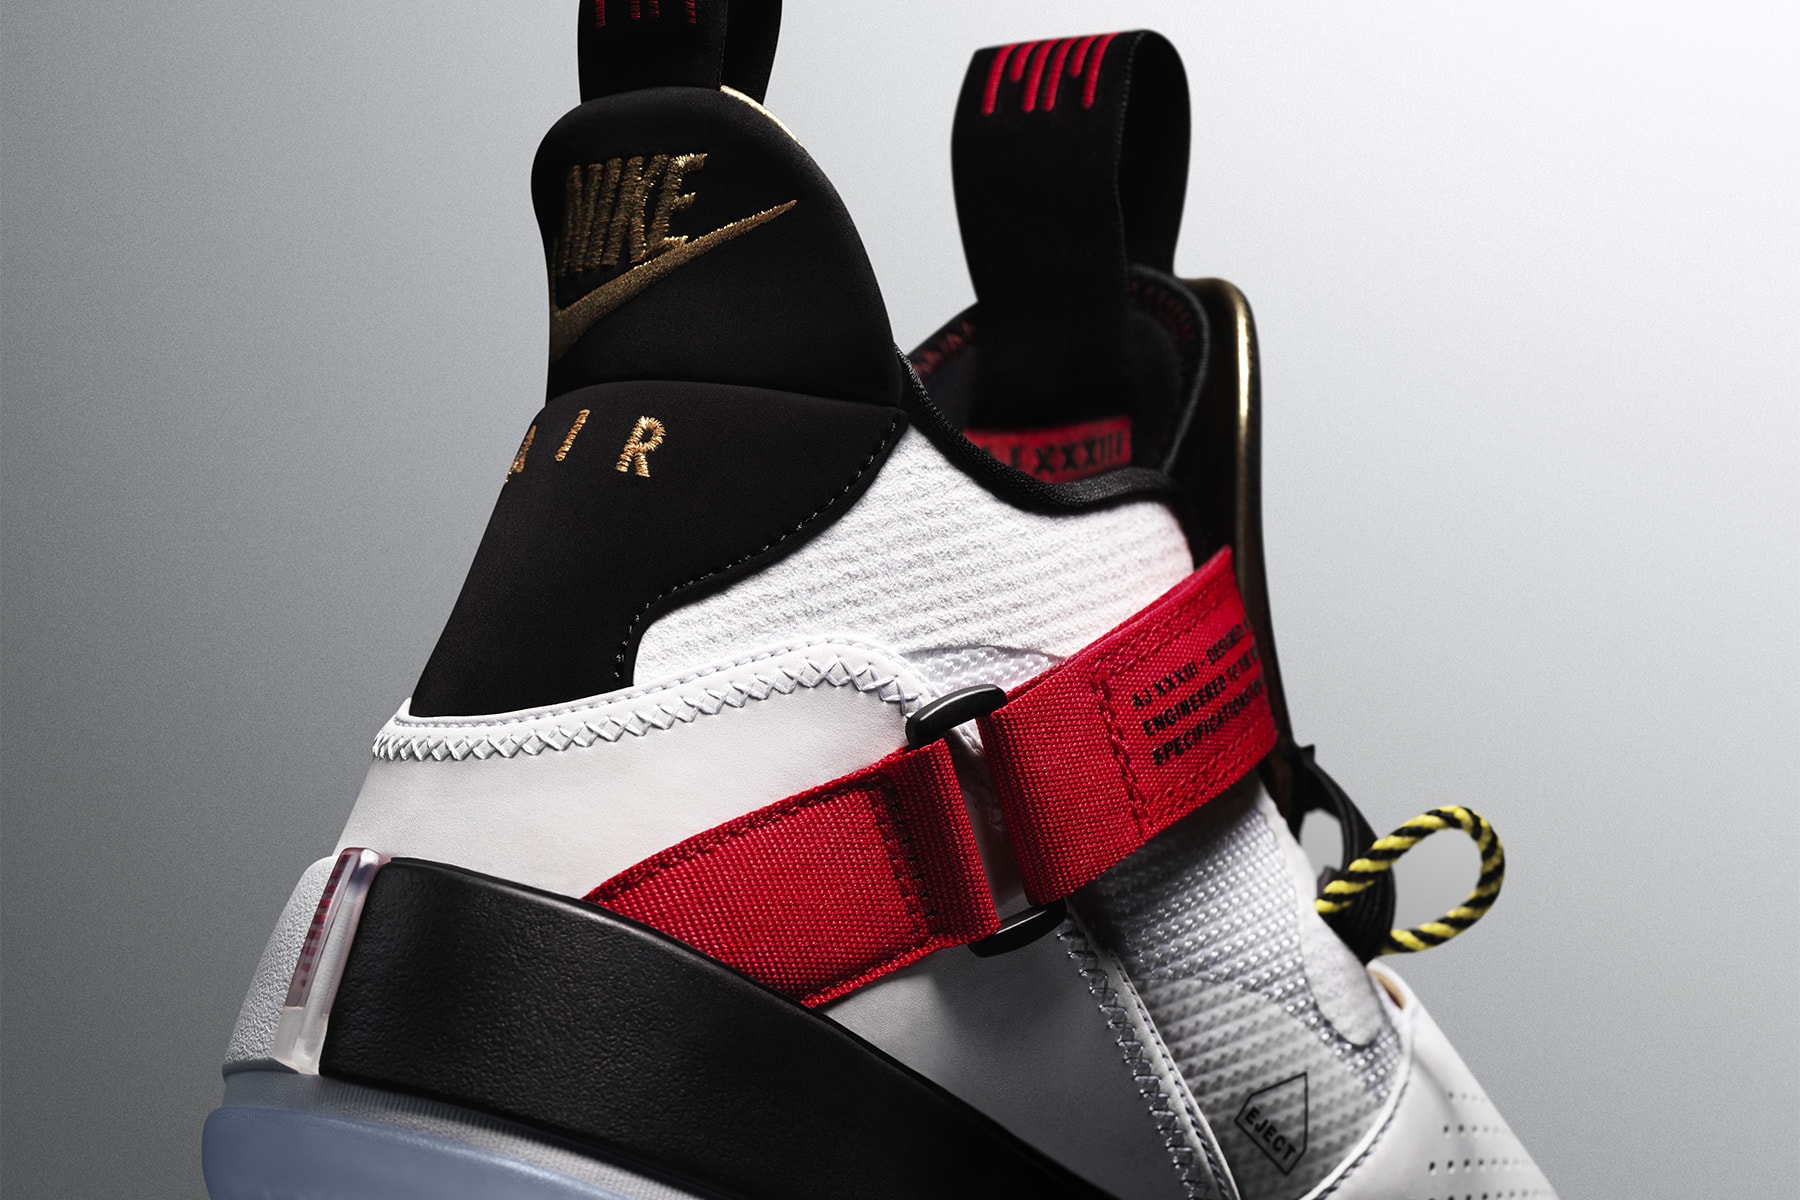 air jordan 33 release date 2018 september october jordan brand footwear